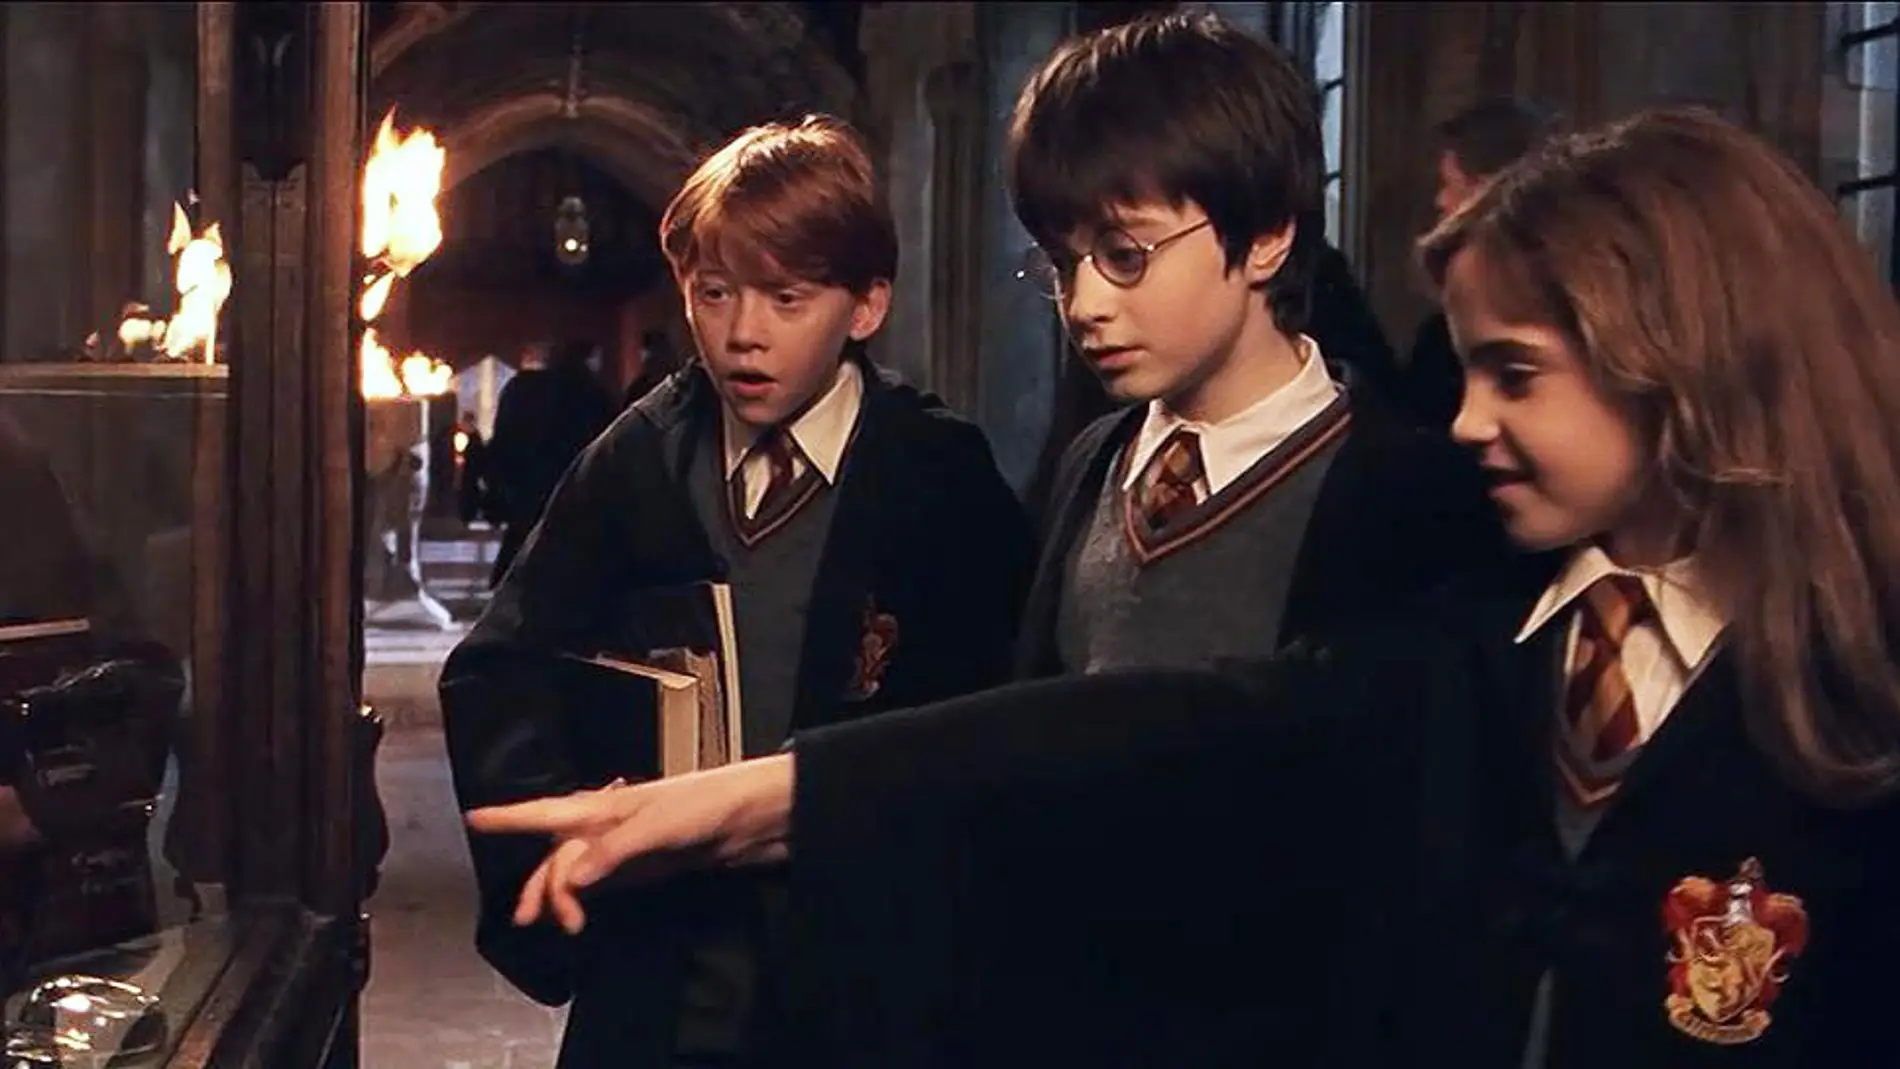 Catarata Prestado Desafortunadamente Las 5 curiosidades de 'Harry Potter' que (probablemente) aún no conocías